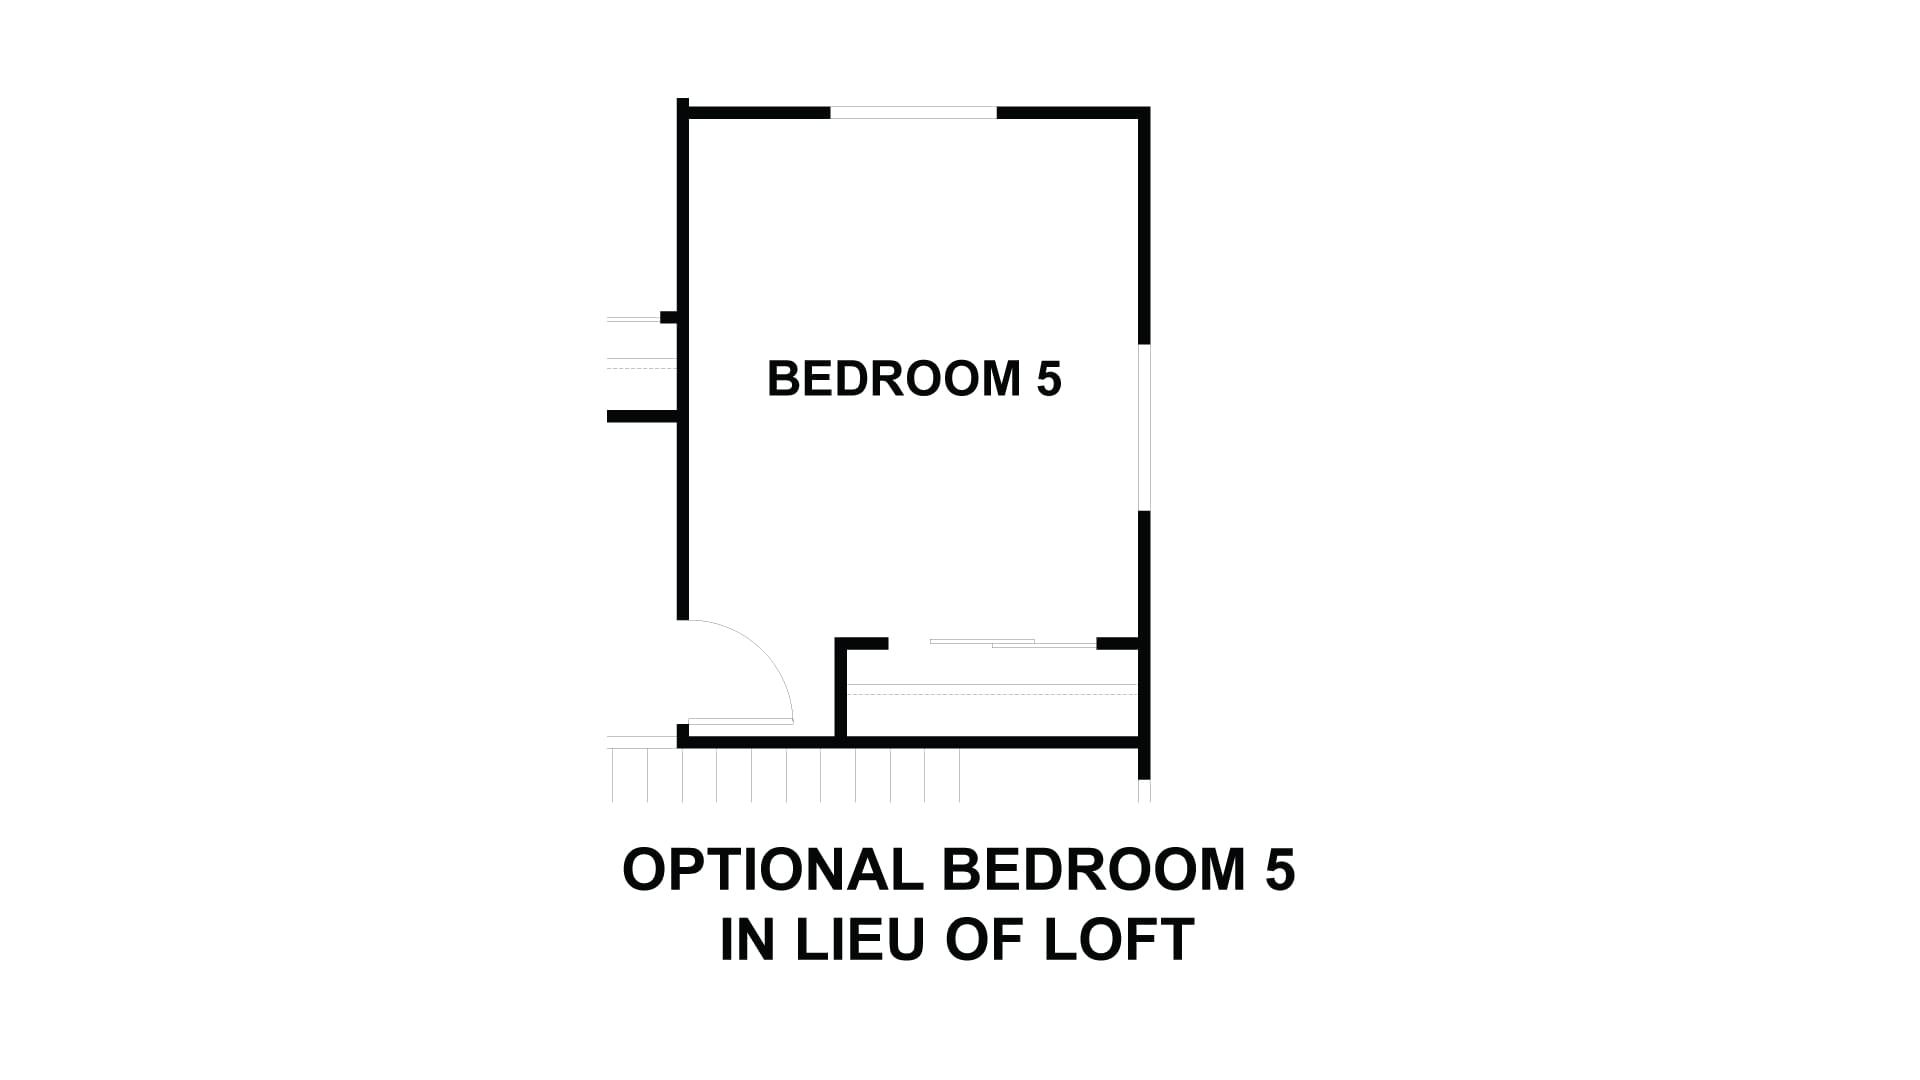 Optional Bedroom 5 in lieu of Loft. 3br New Home in Costa Mesa, CA